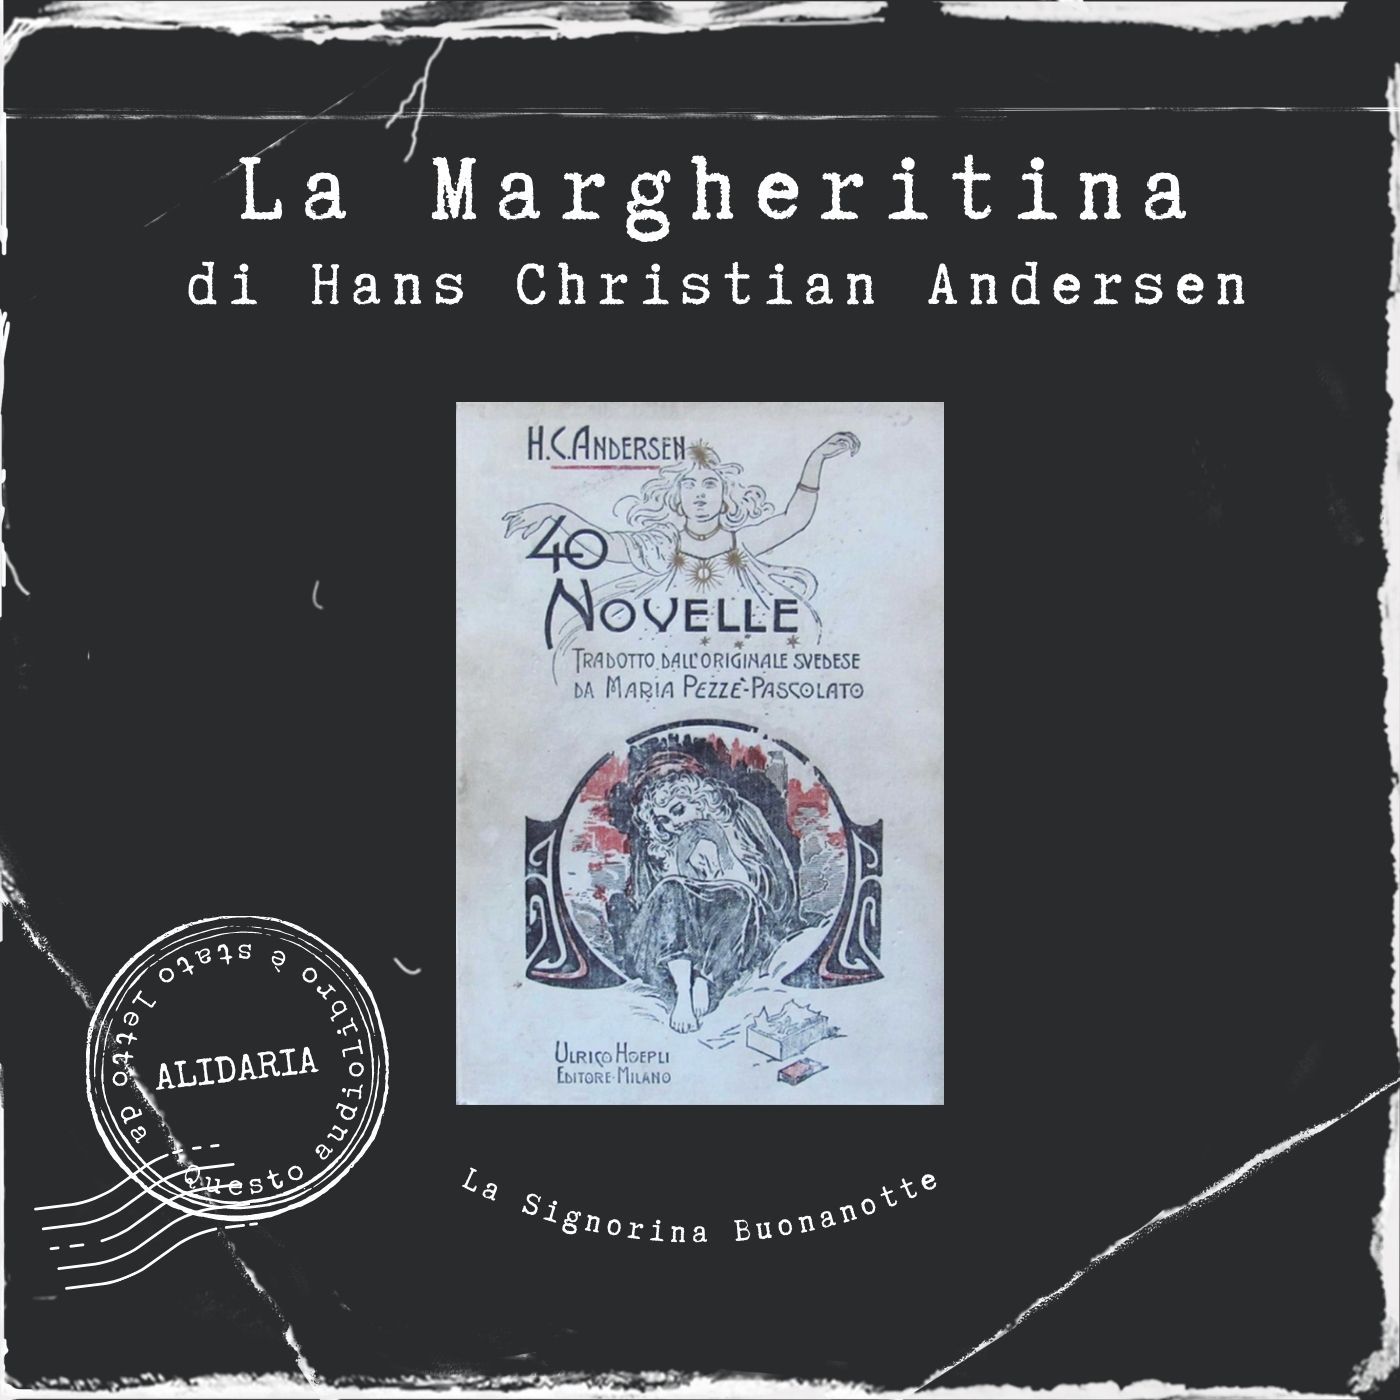 La margheritina: l'audiolibro delle novelle di Andersen